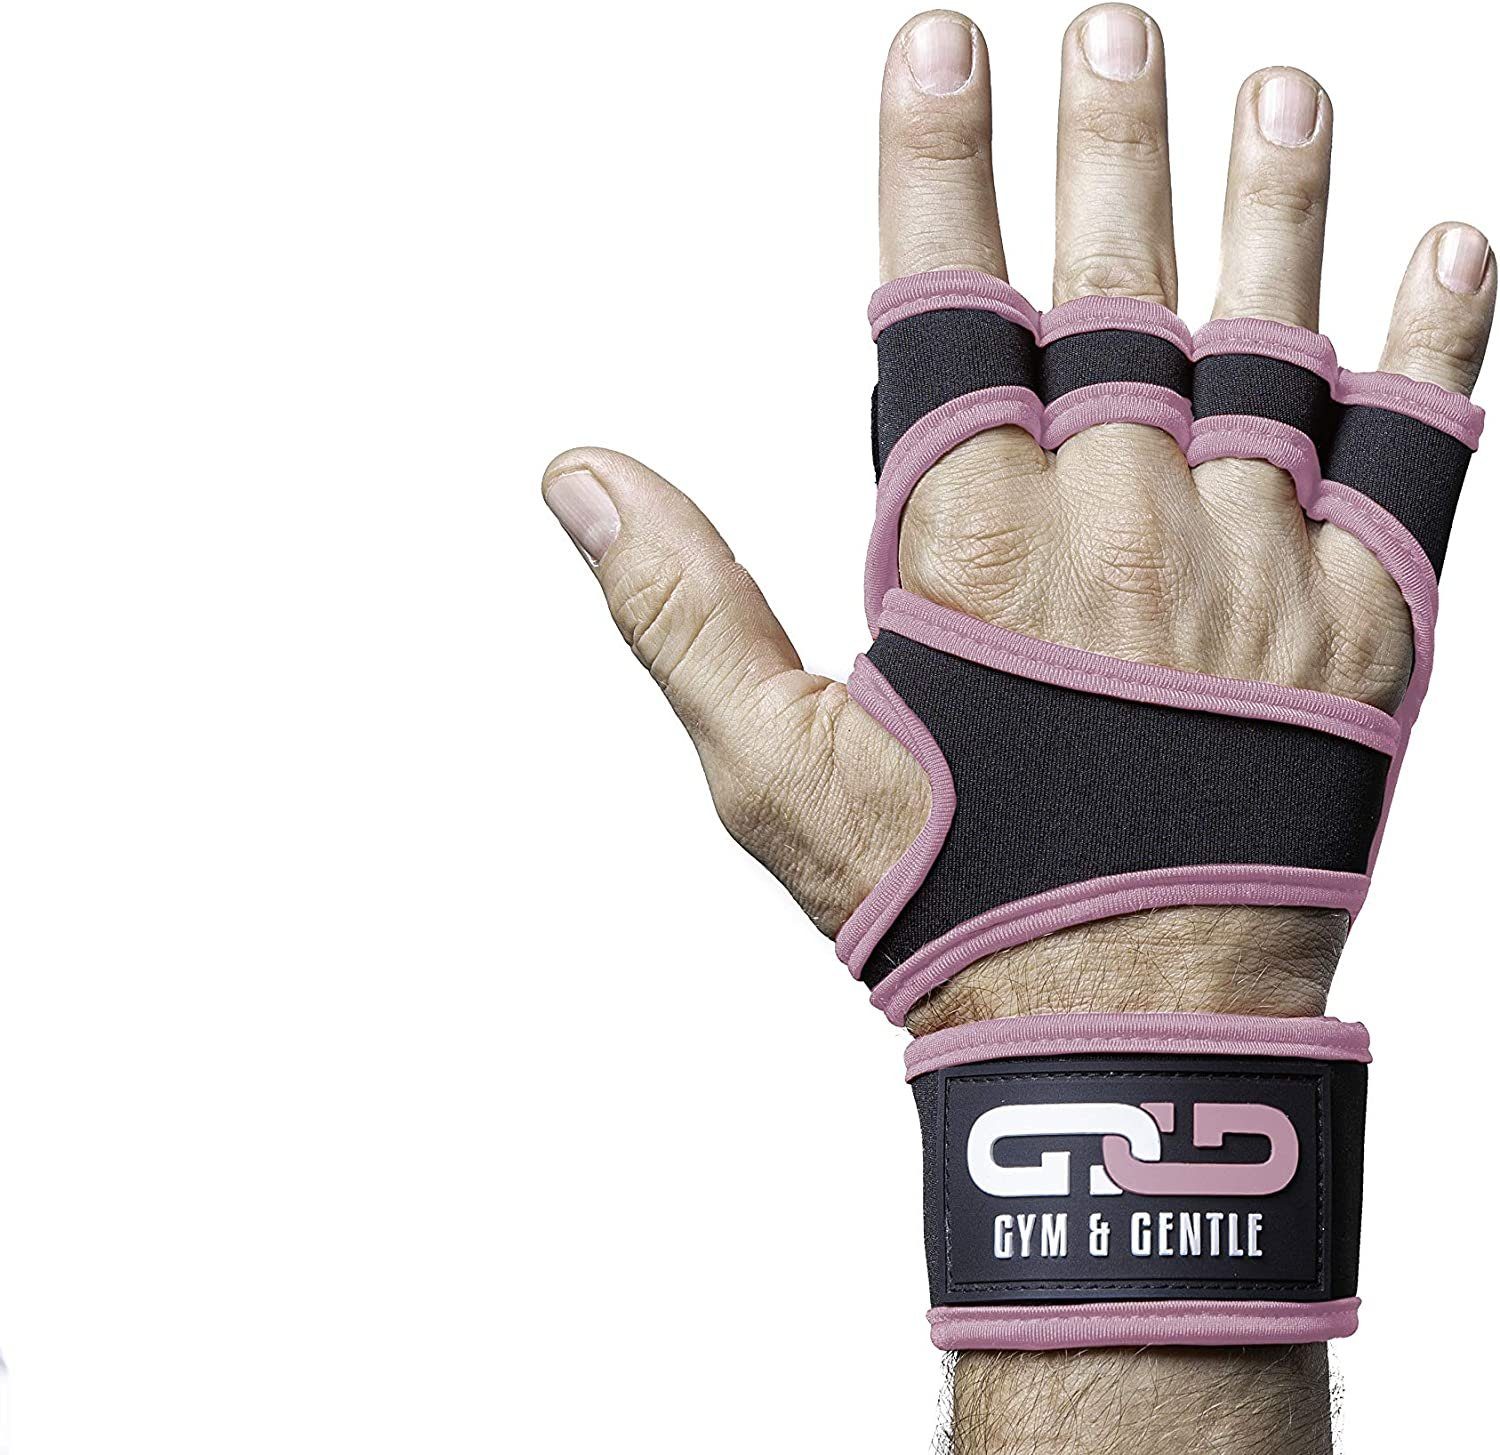 Männer für und Gym Multisporthandschuhe mit Fitnesshandschuhe rosa & geringes Handgelenkstütze Frauen Gentle Gewicht